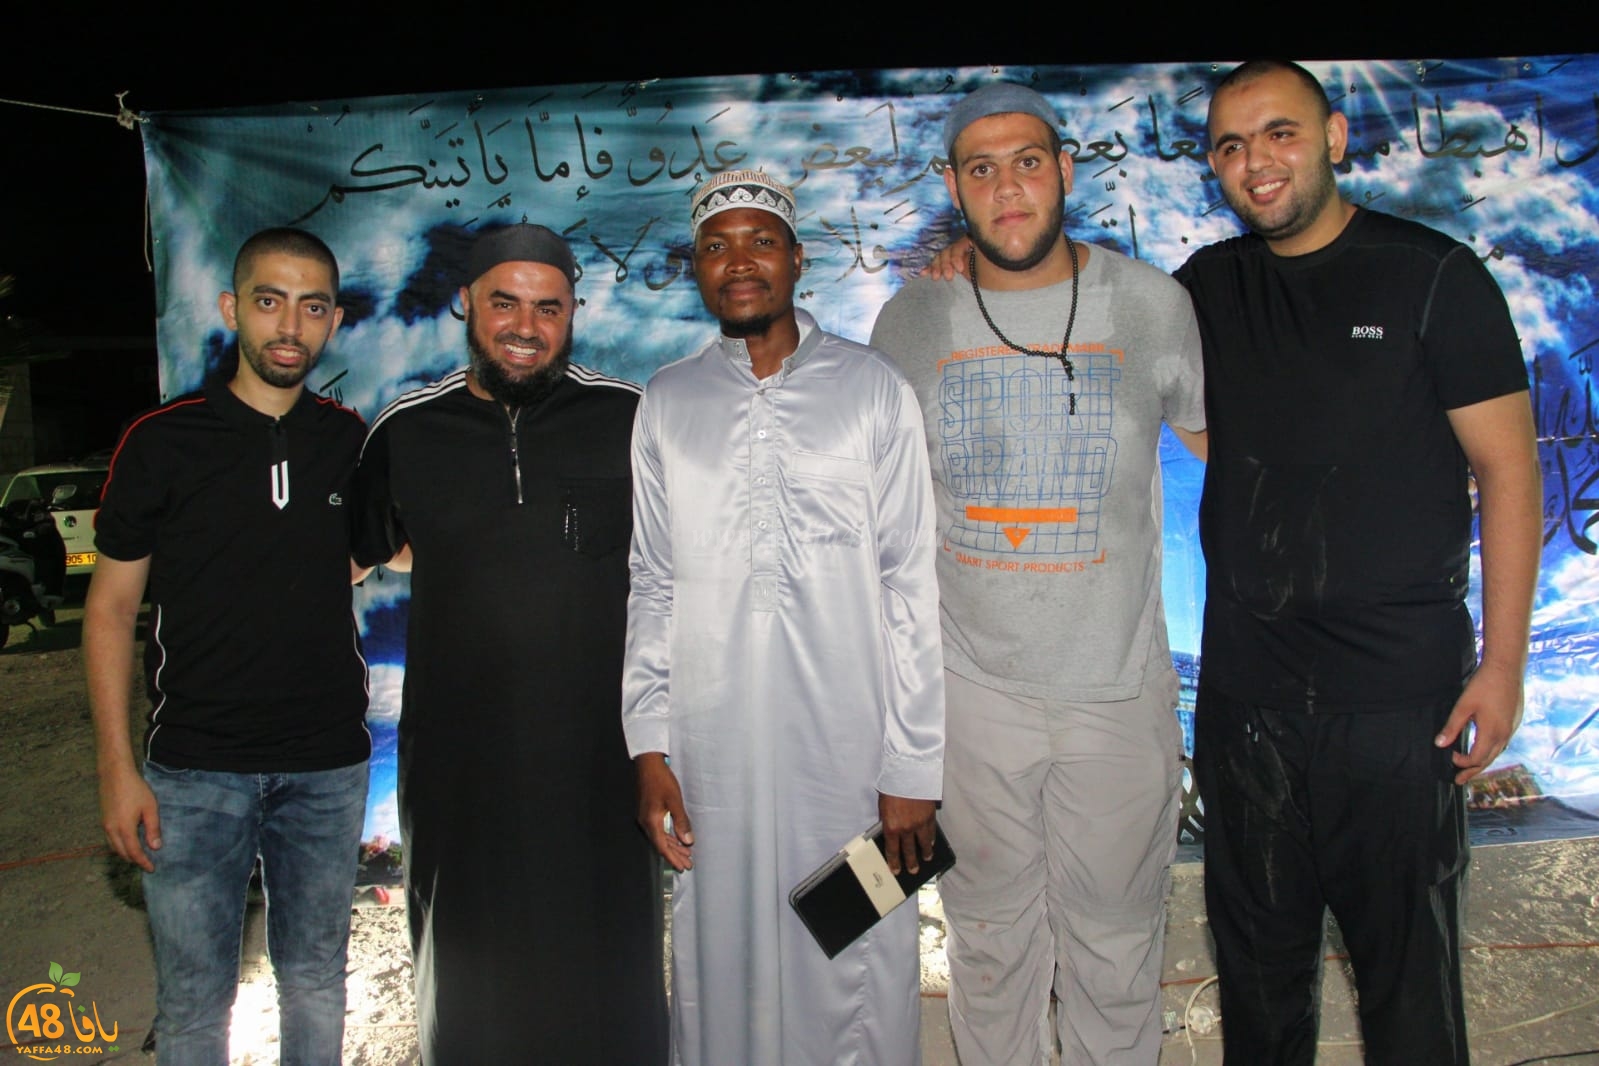   بالصور: خيمة الهدى الدعوية بيافا تستضيف الشيخ عثمان ابو بكر 